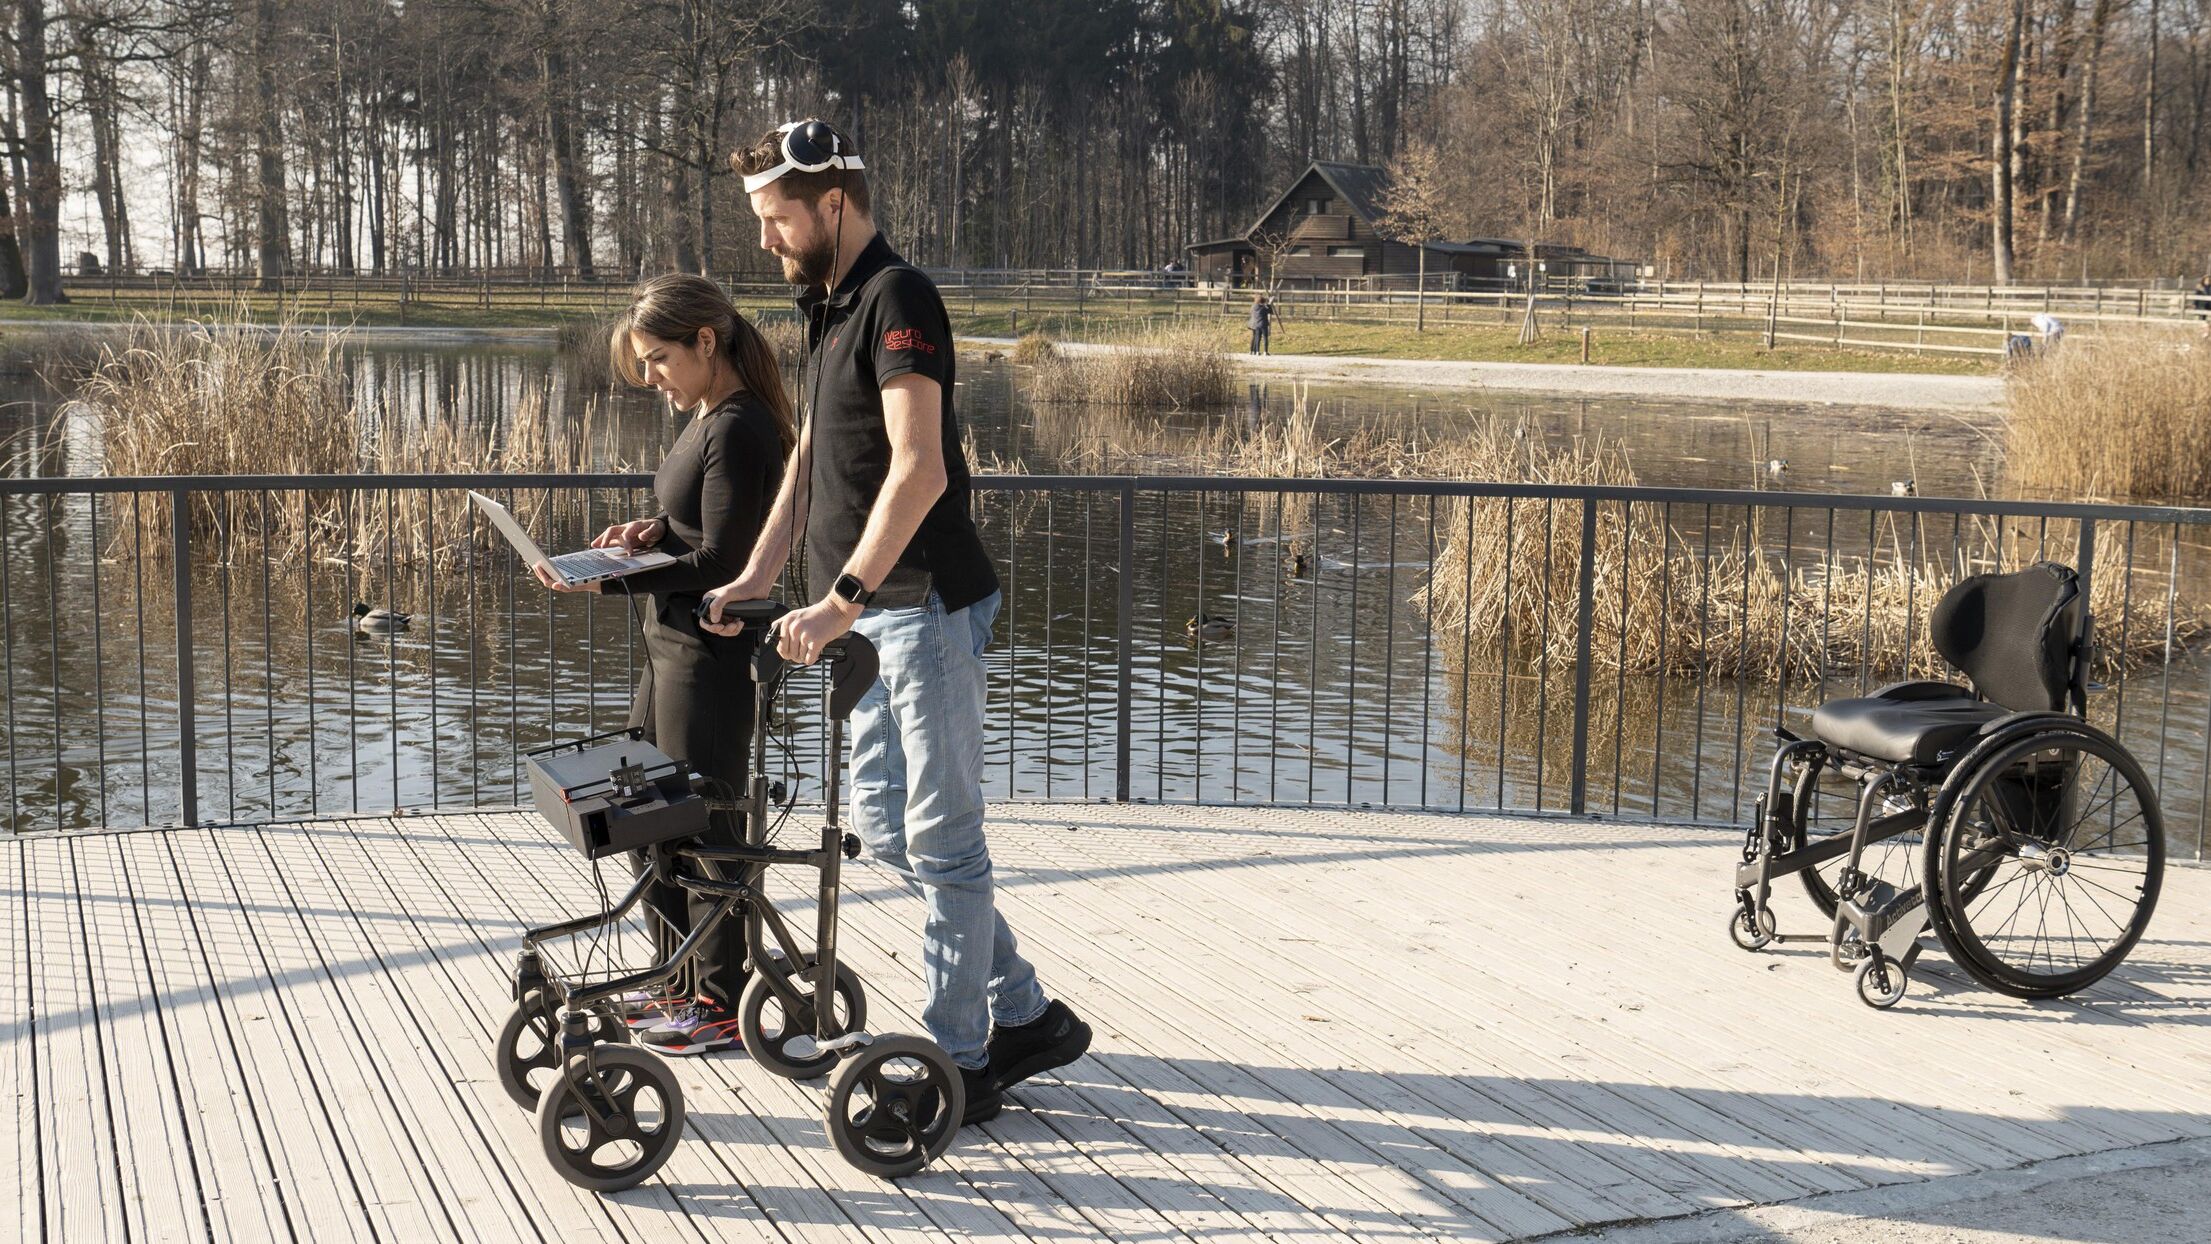 Caminar gracias al pensamiento: Gert-Jan Oskam, que quedó paralizado en las extremidades inferiores tras un accidente de bicicleta y que ha vuelto a caminar gracias a un puente digital entre el cerebro y la médula espinal, en el Centre Hospitalier Universitaire Vaudois